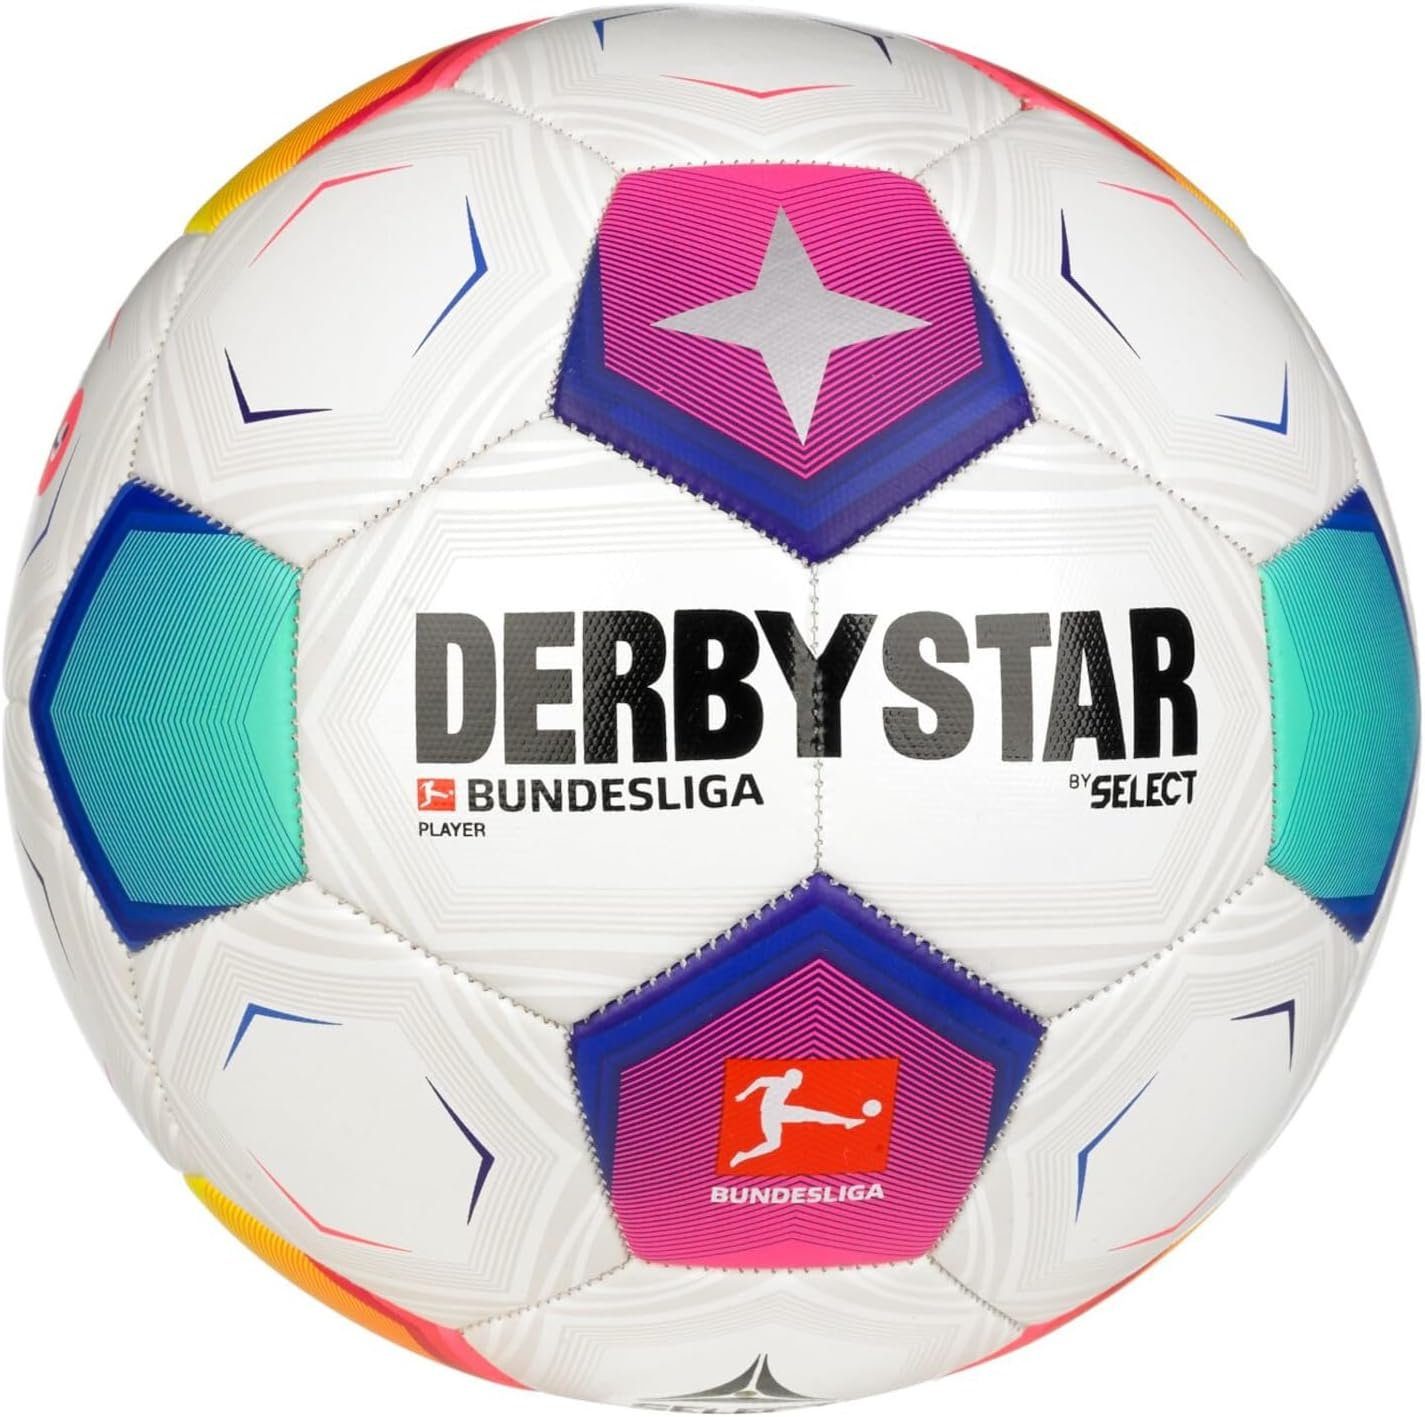 Derbystar Fußball Derbystar FB-BL Player v23 | Fußbälle